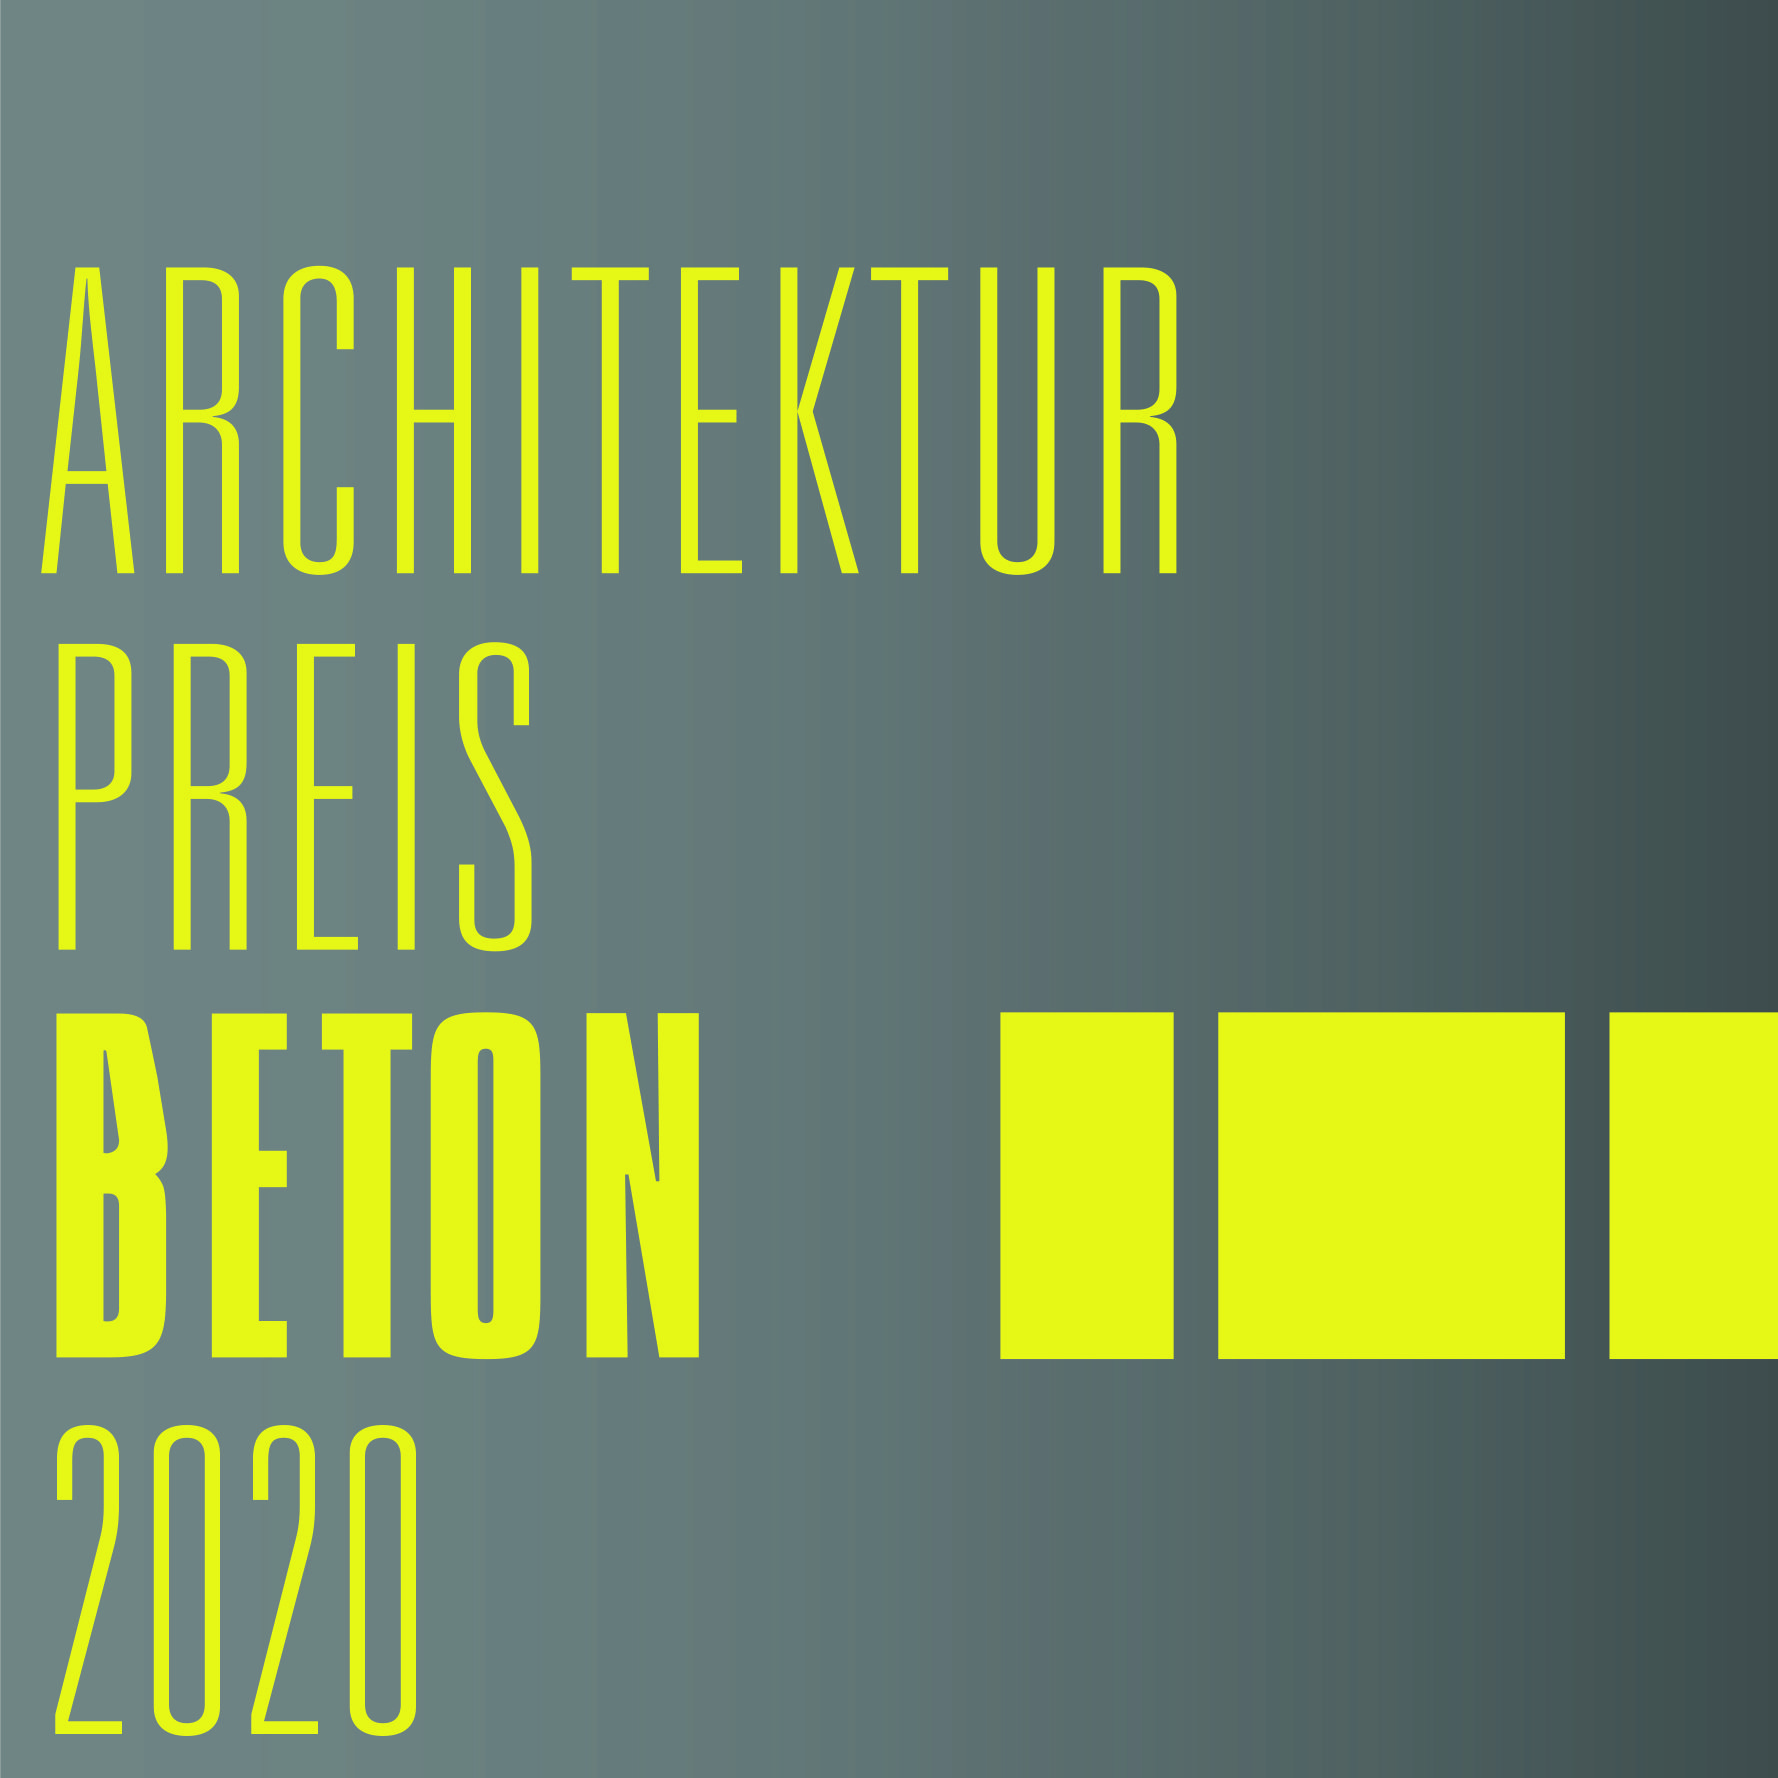 Architekturpreis Beton 2020